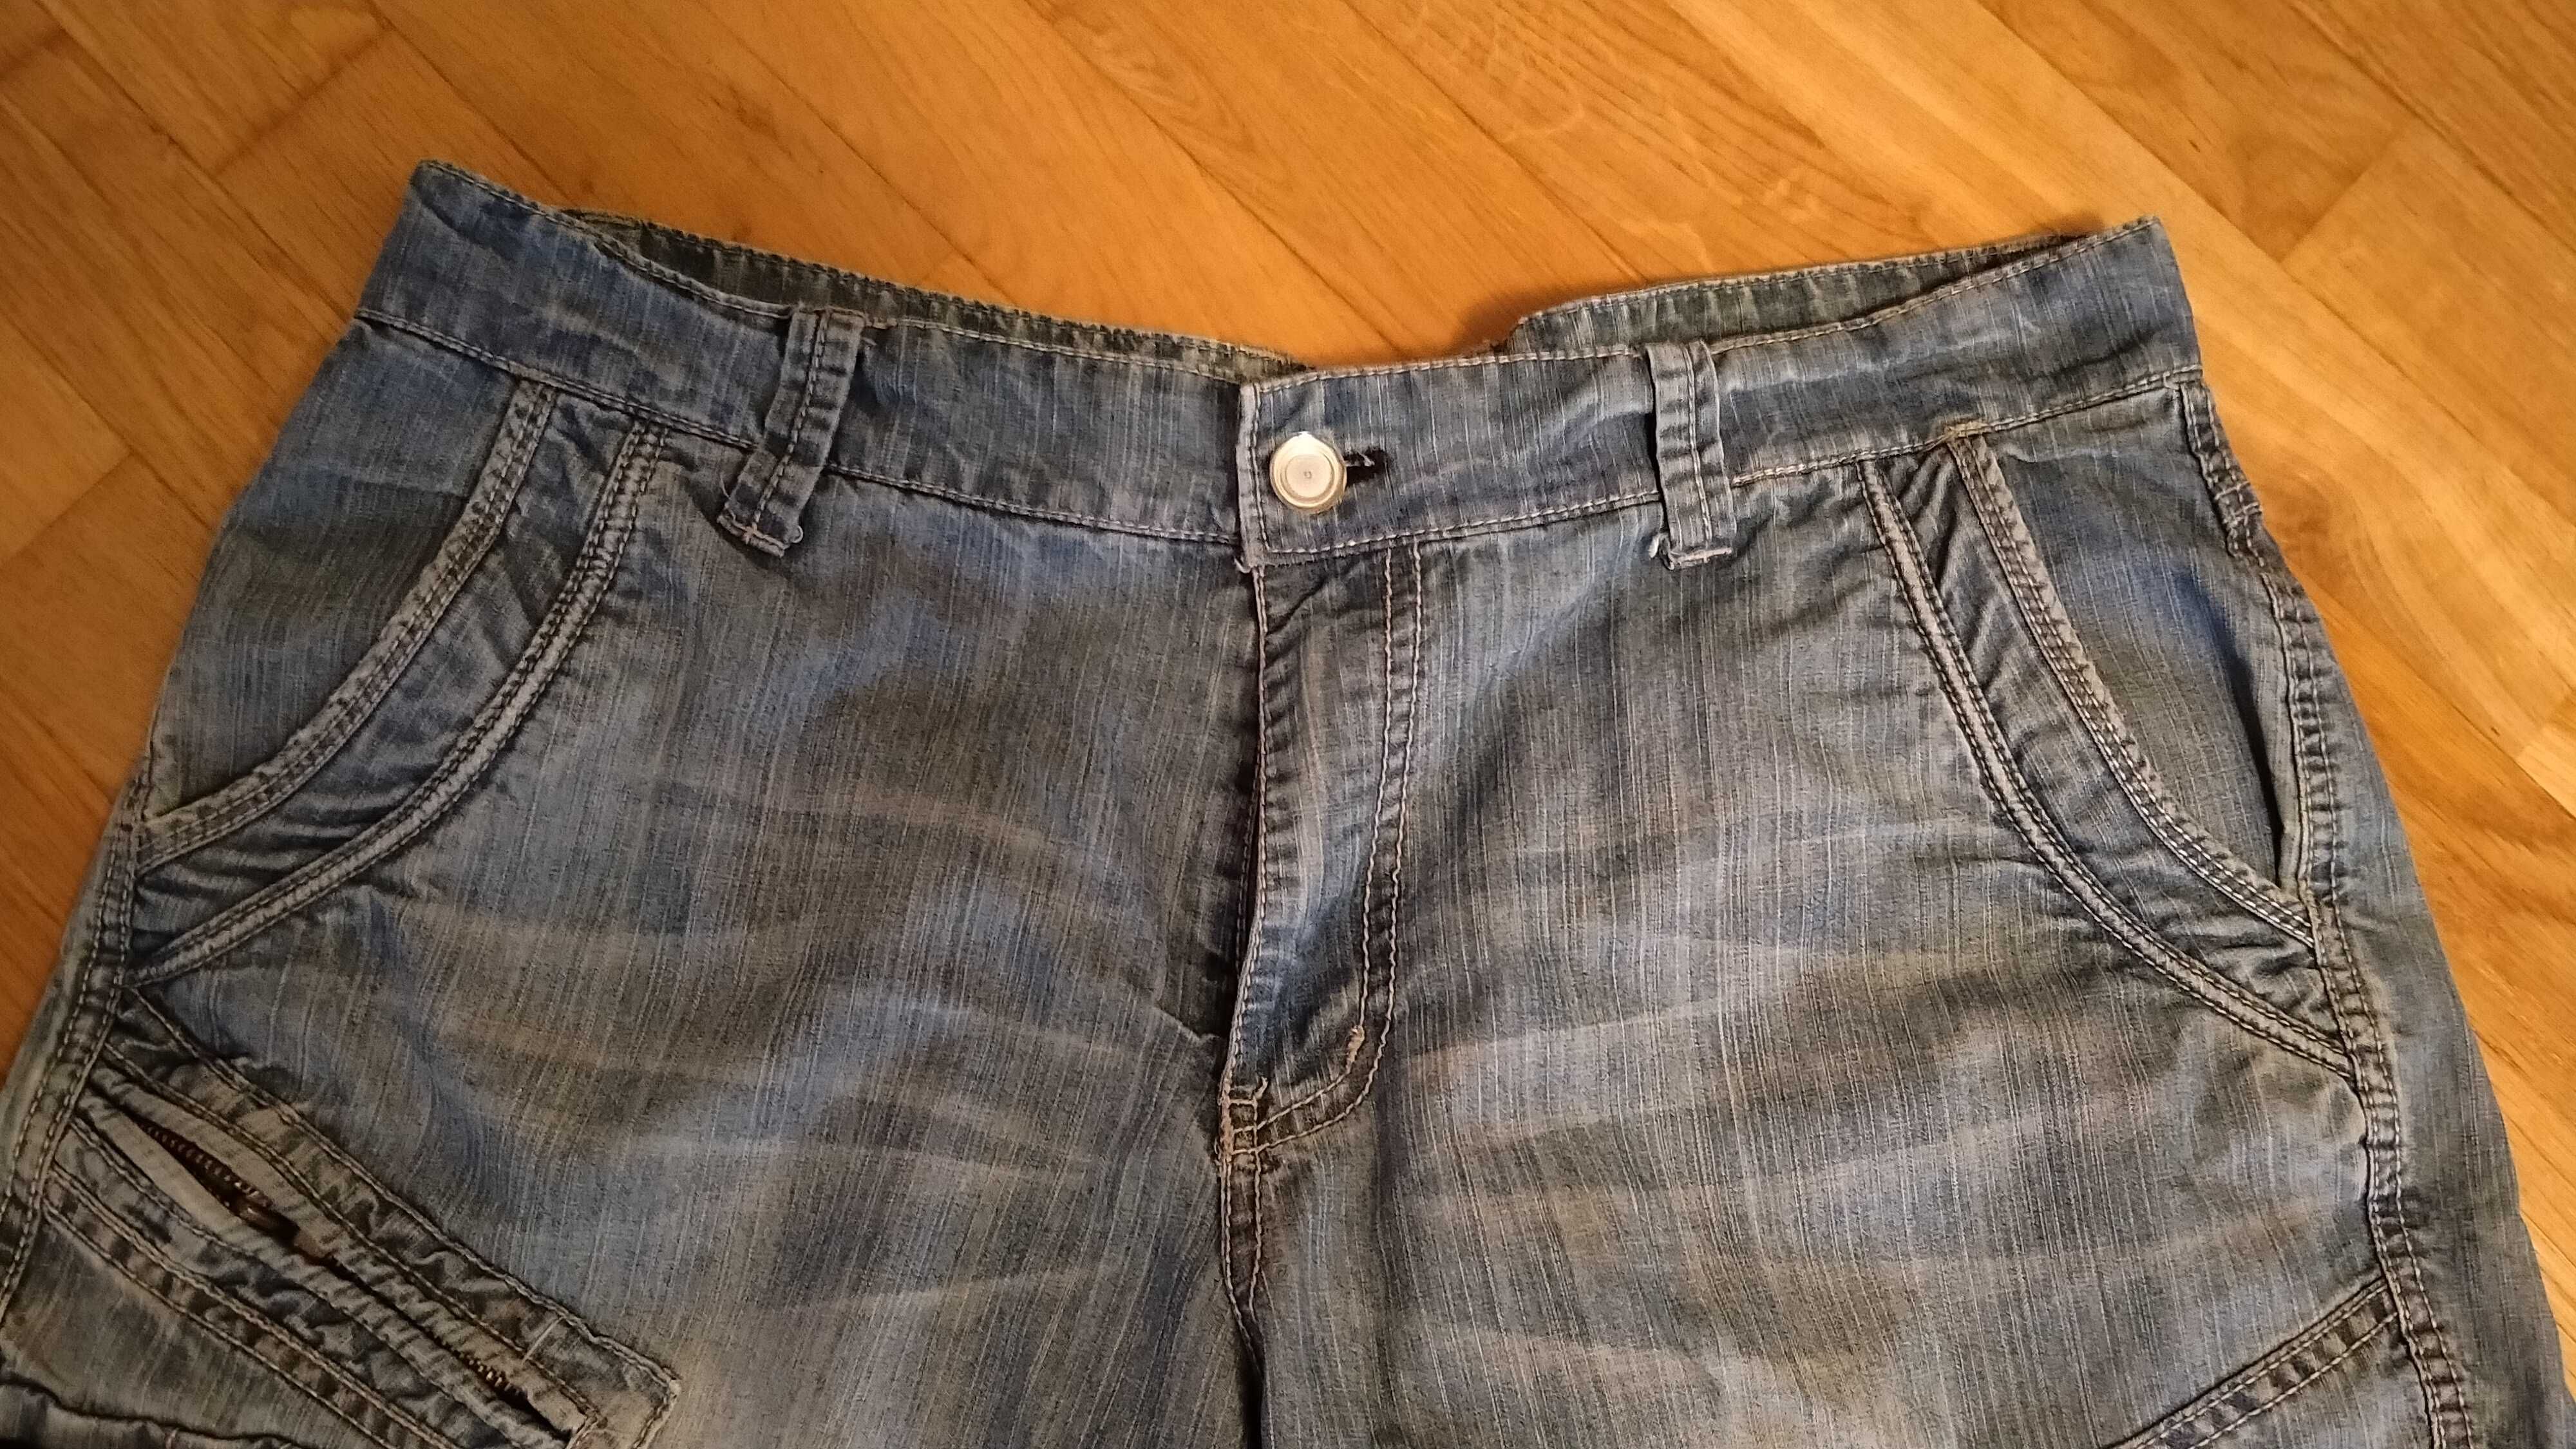 Krótkie spodenki męskie, jeansowe z kieszeniami, Stan BDB, Polecam